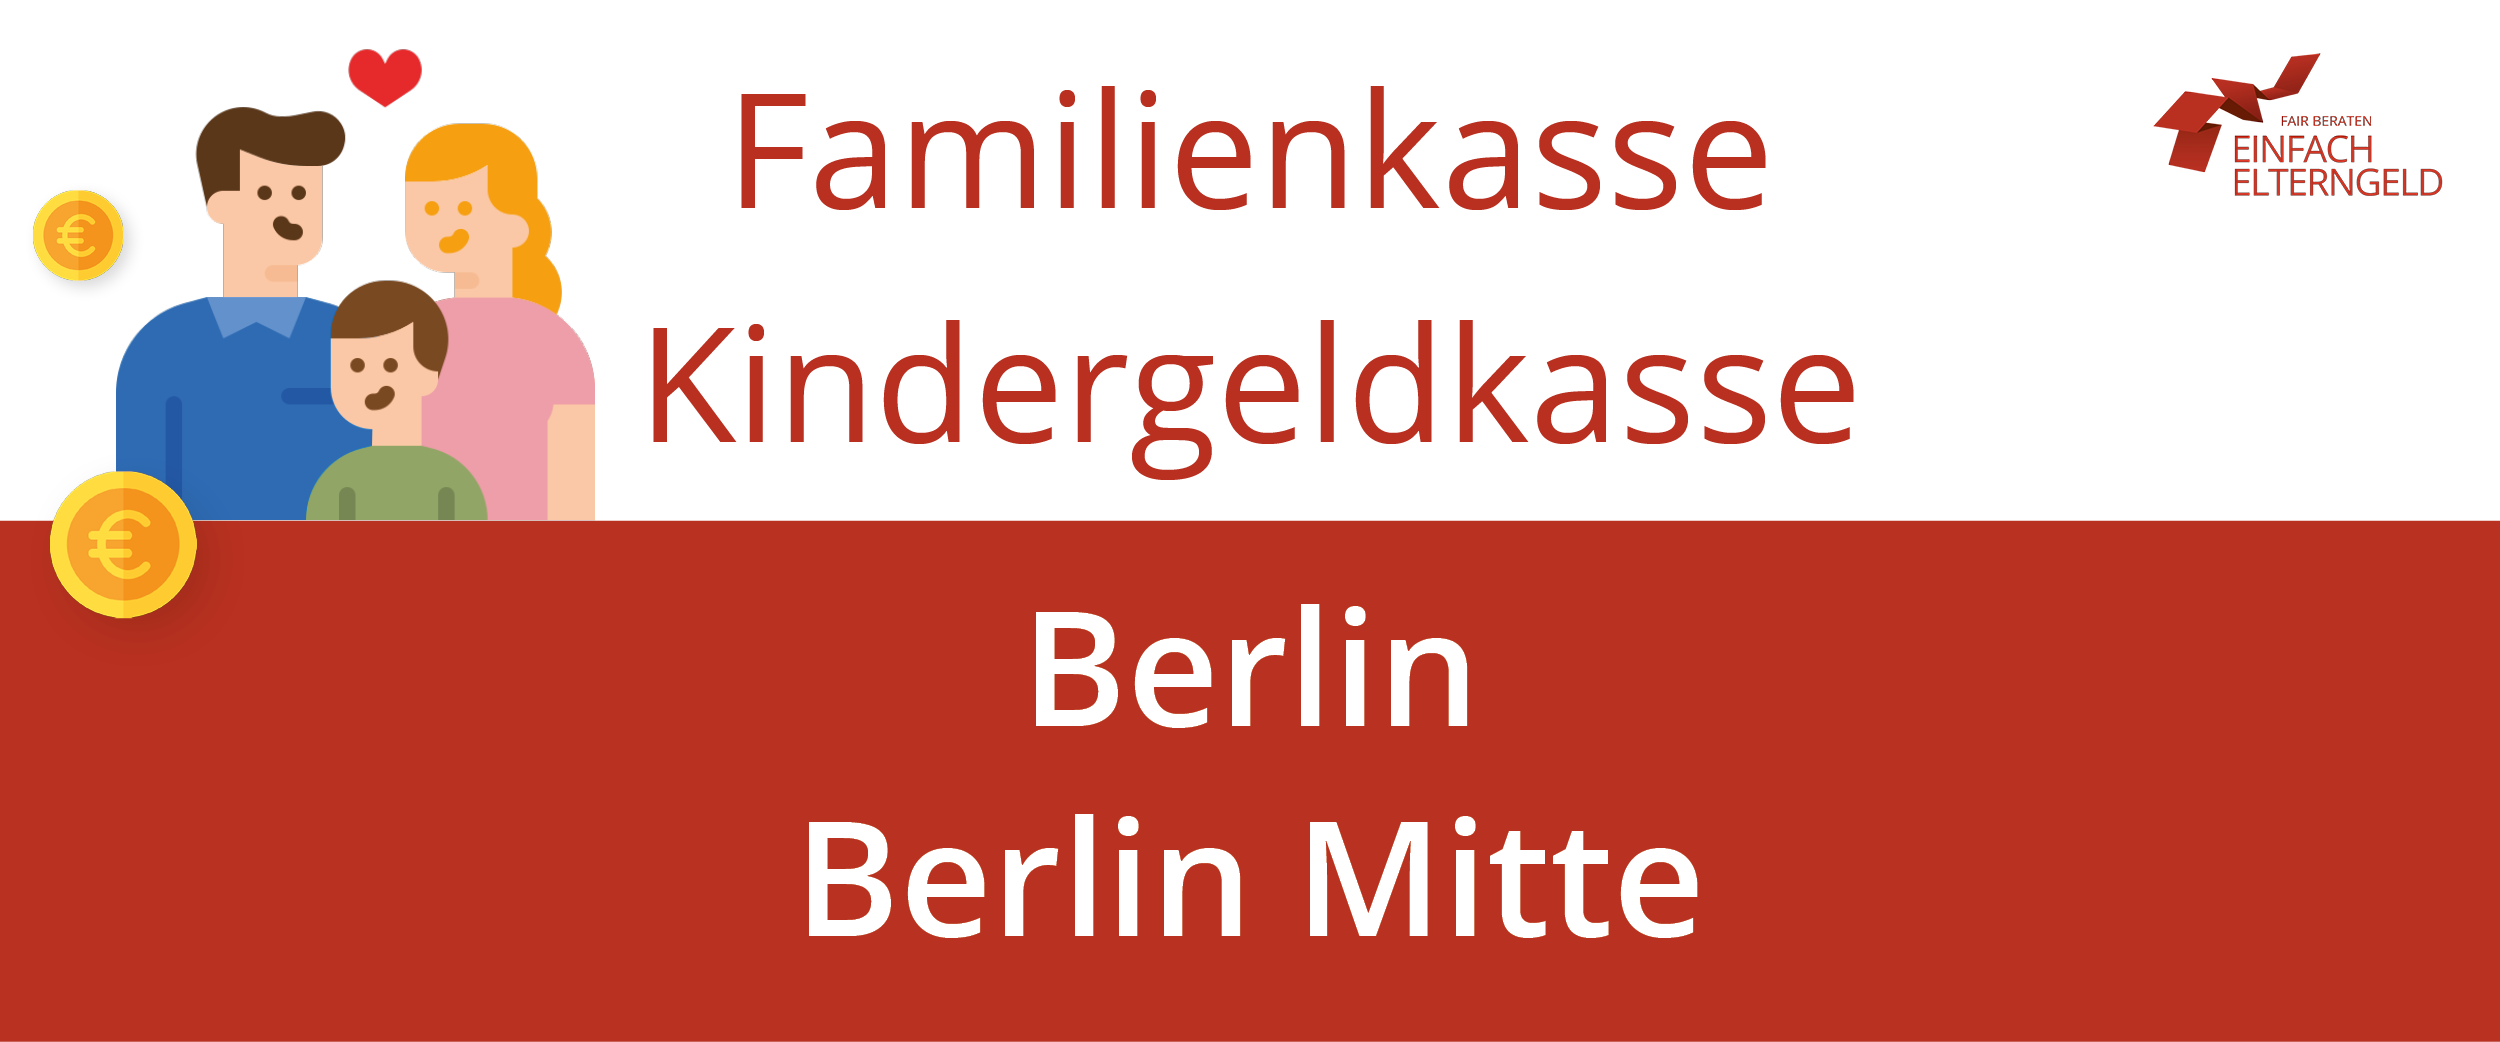 Wir stellen die Familienkasse Kindergeldkasse Berlin Mitte vor.